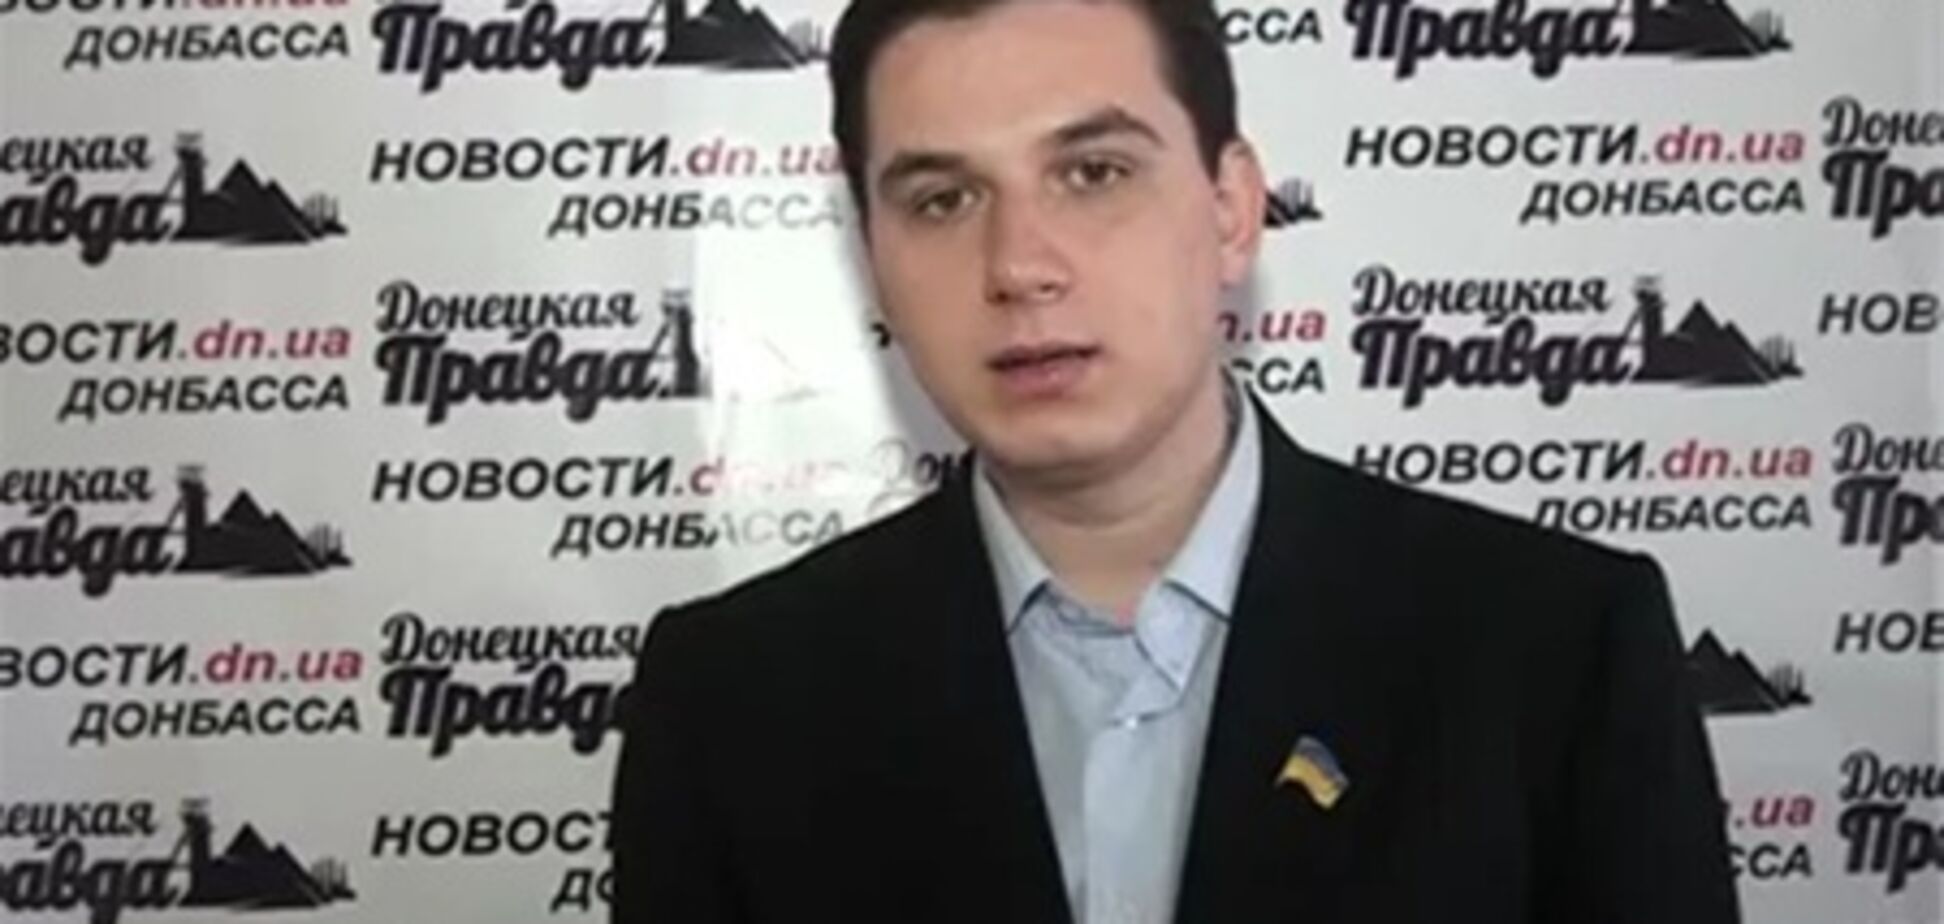 Суд зобов'язав радикала вибачитися перед міліцією Донецька